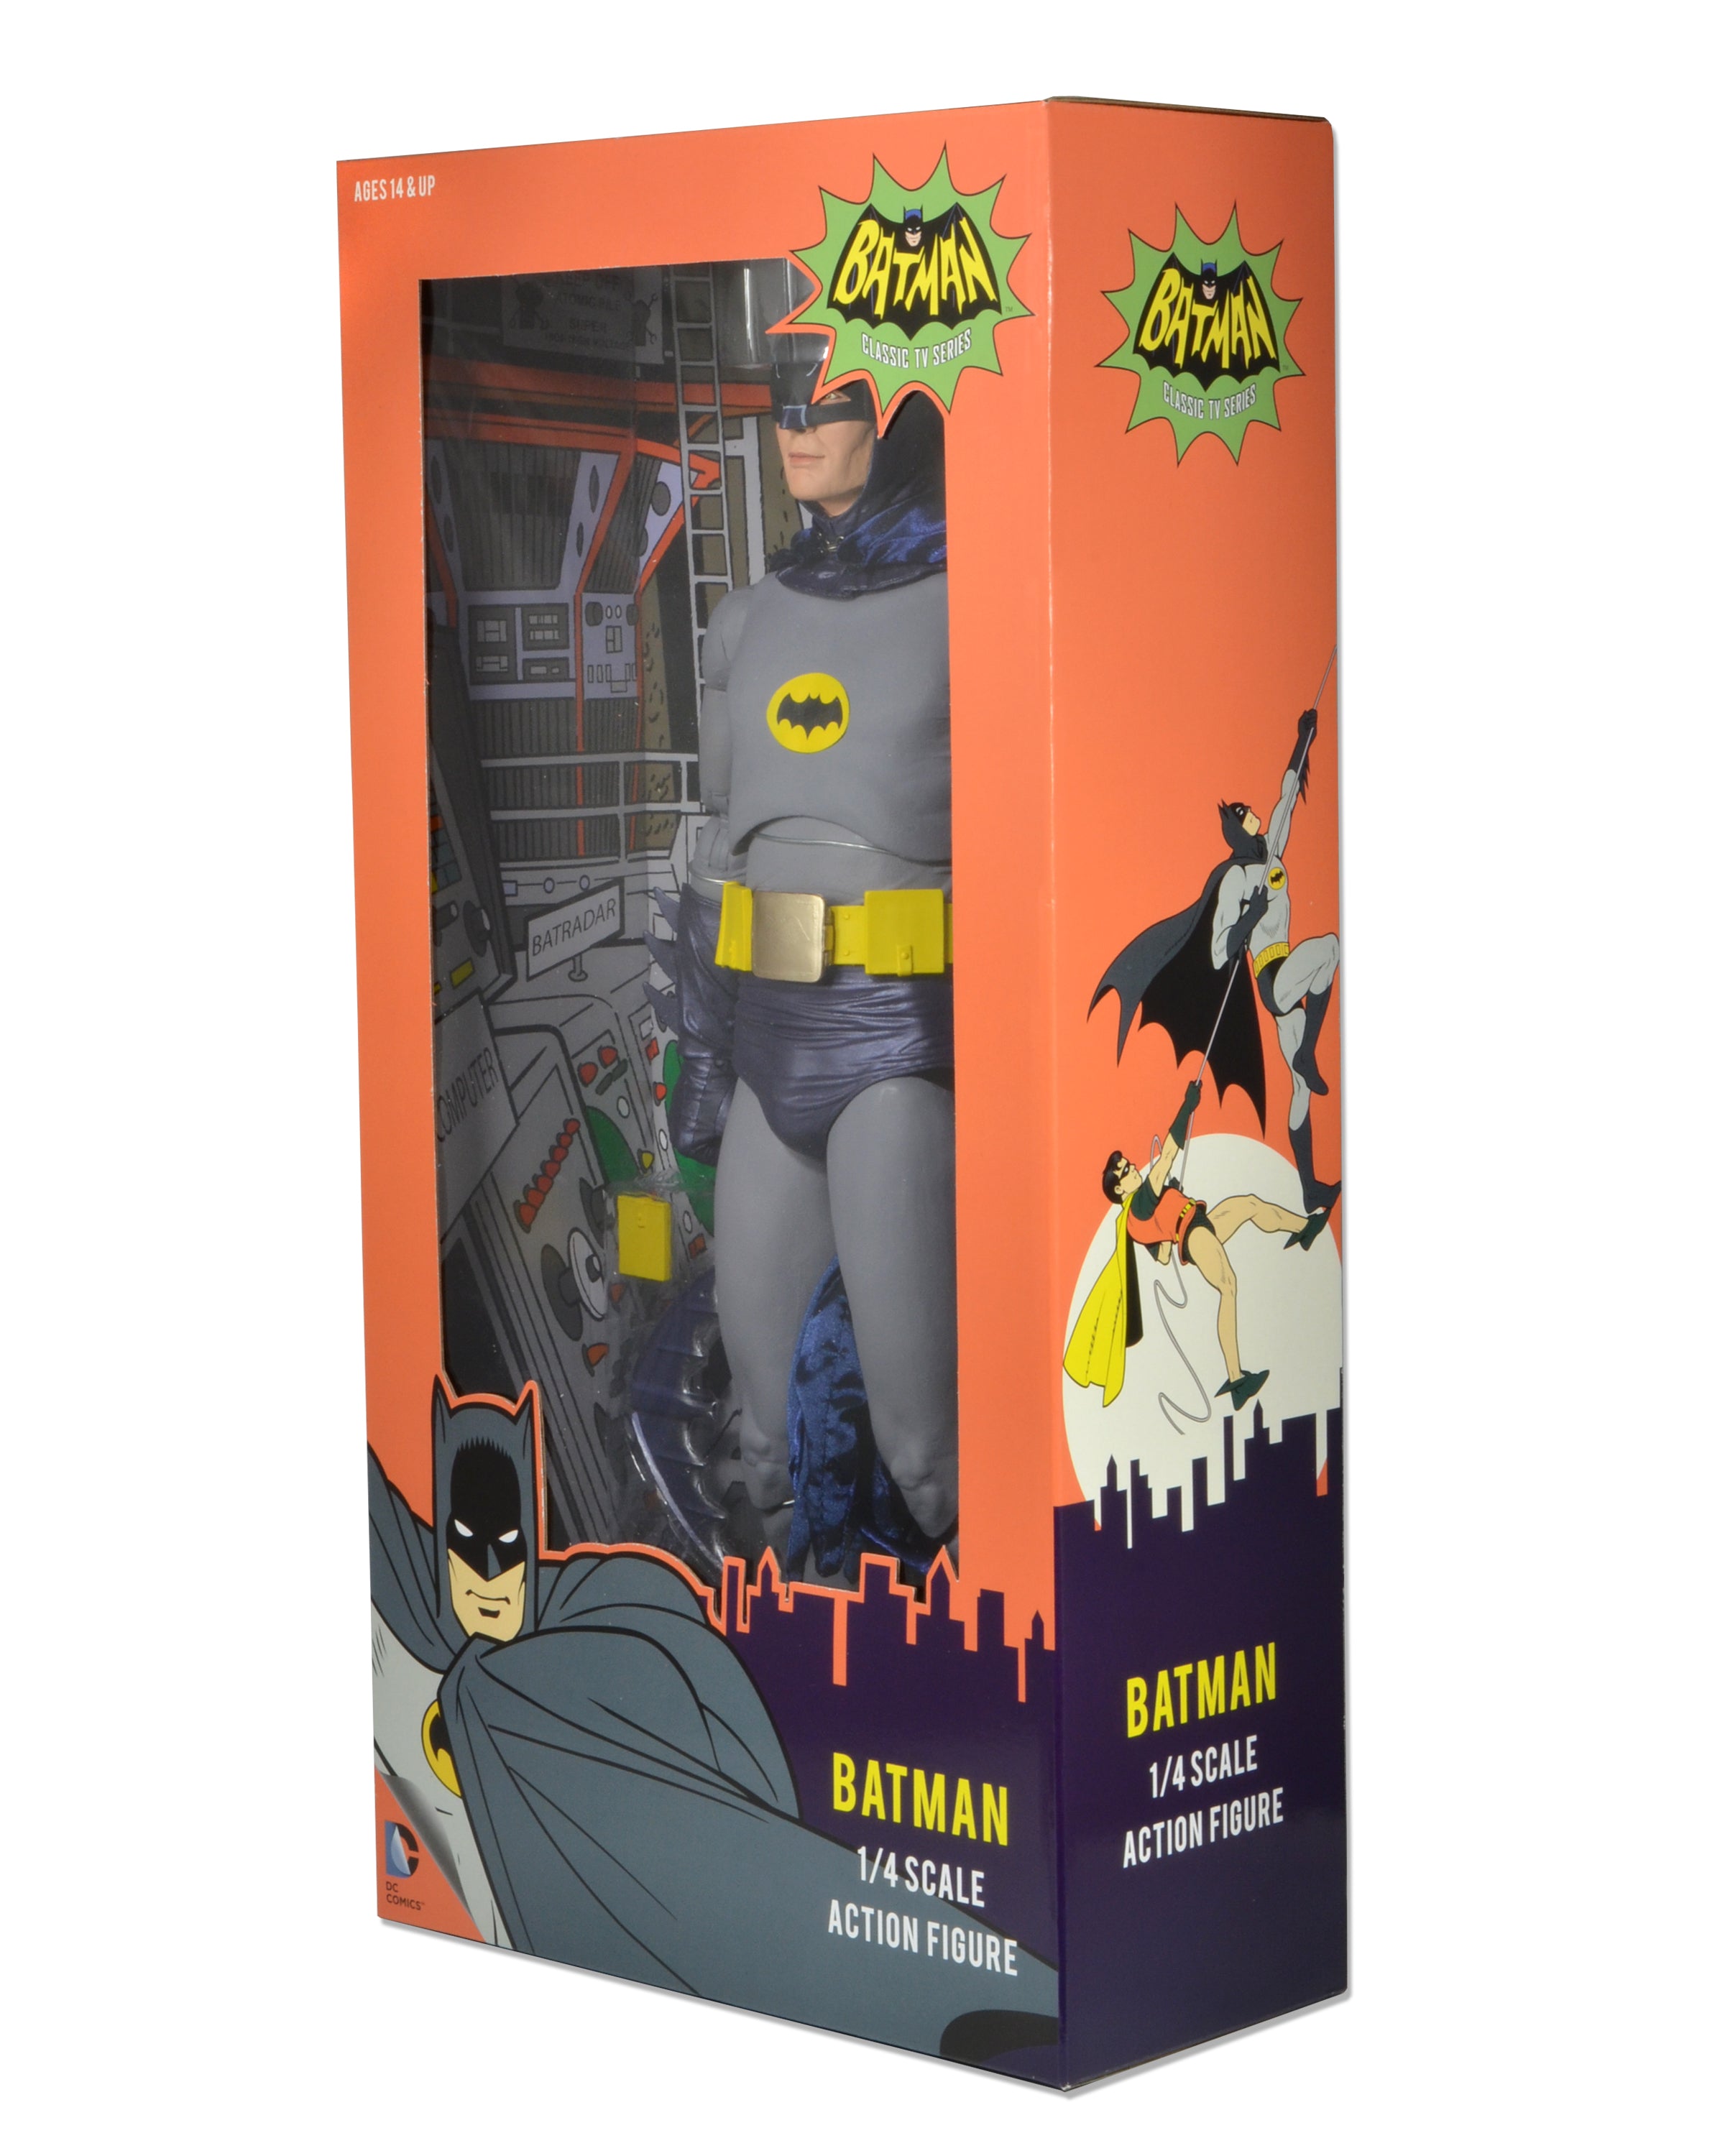 Quarter scale Adam West Batman action figure side view of box